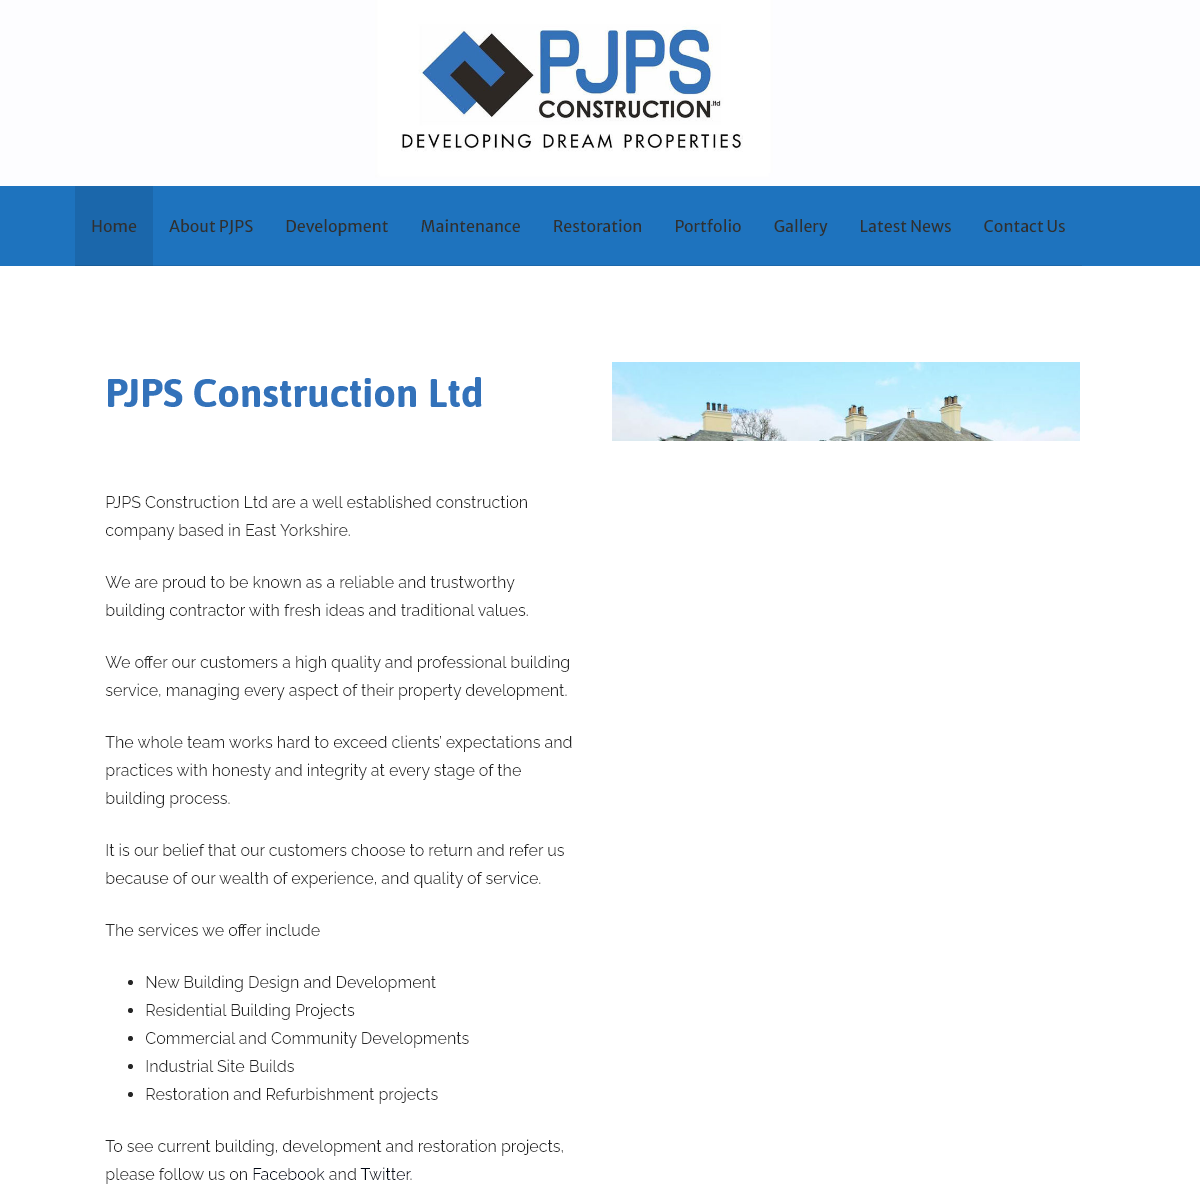 A complete backup of pjpsconstruction.com